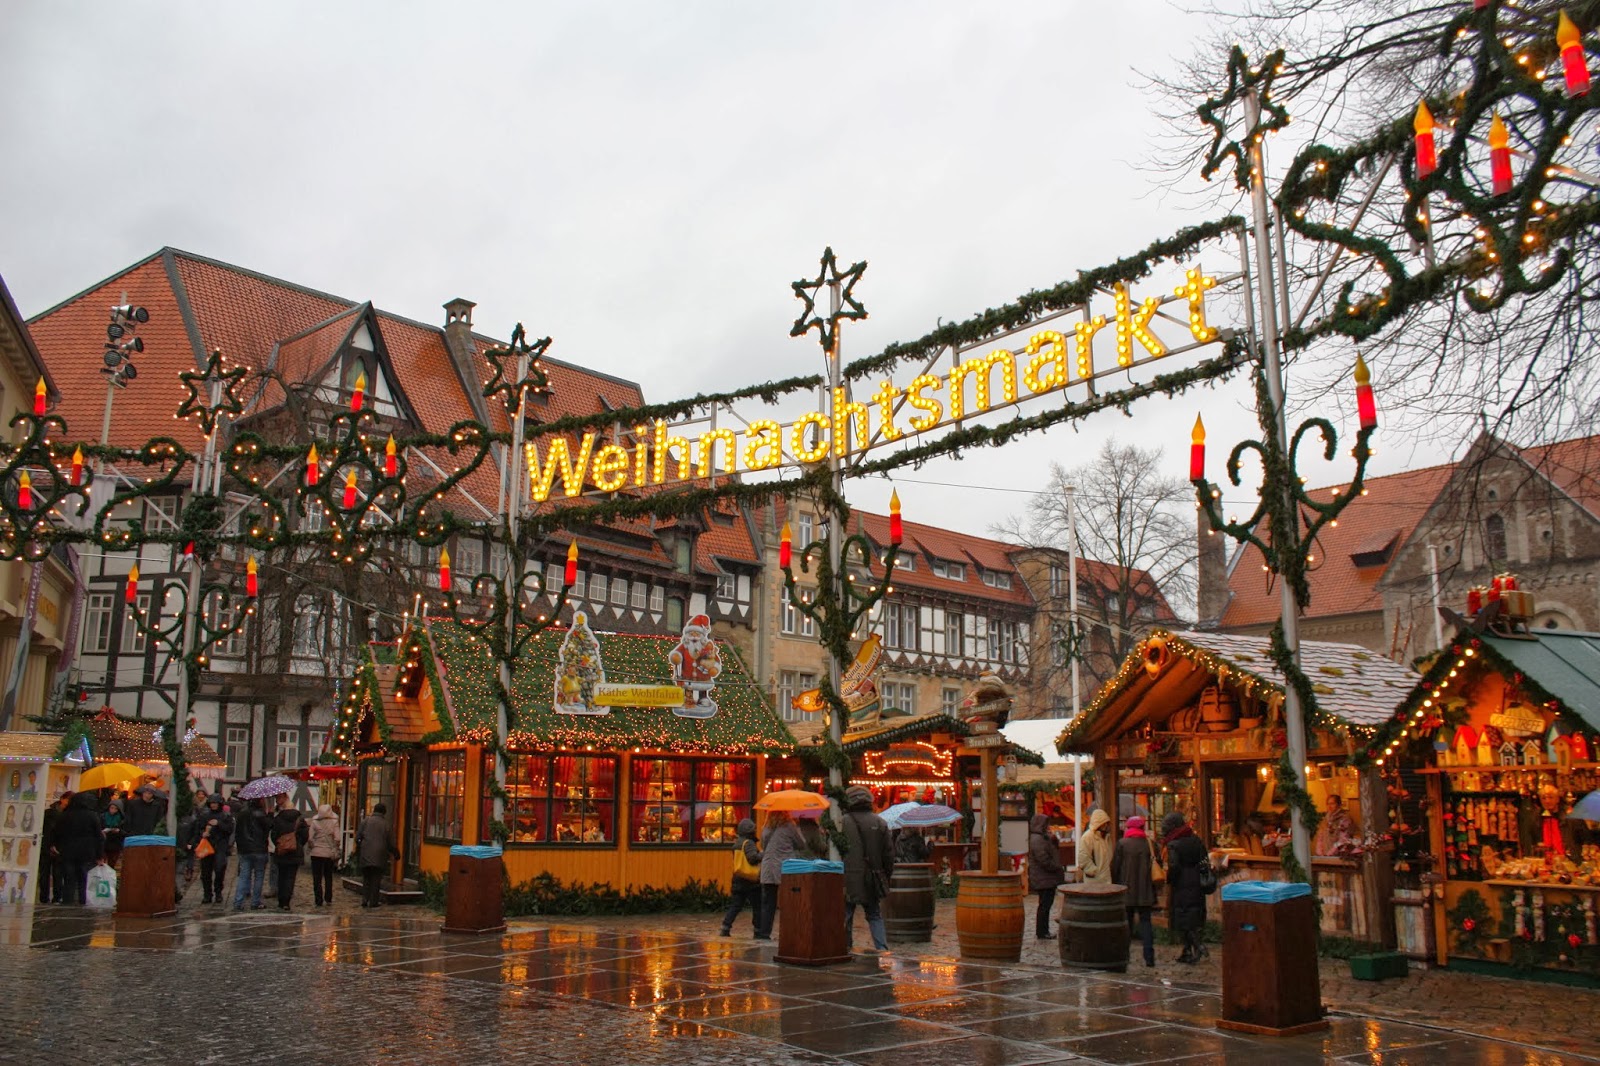 A Lucy in Germany: Walking in a Winter Wonderland